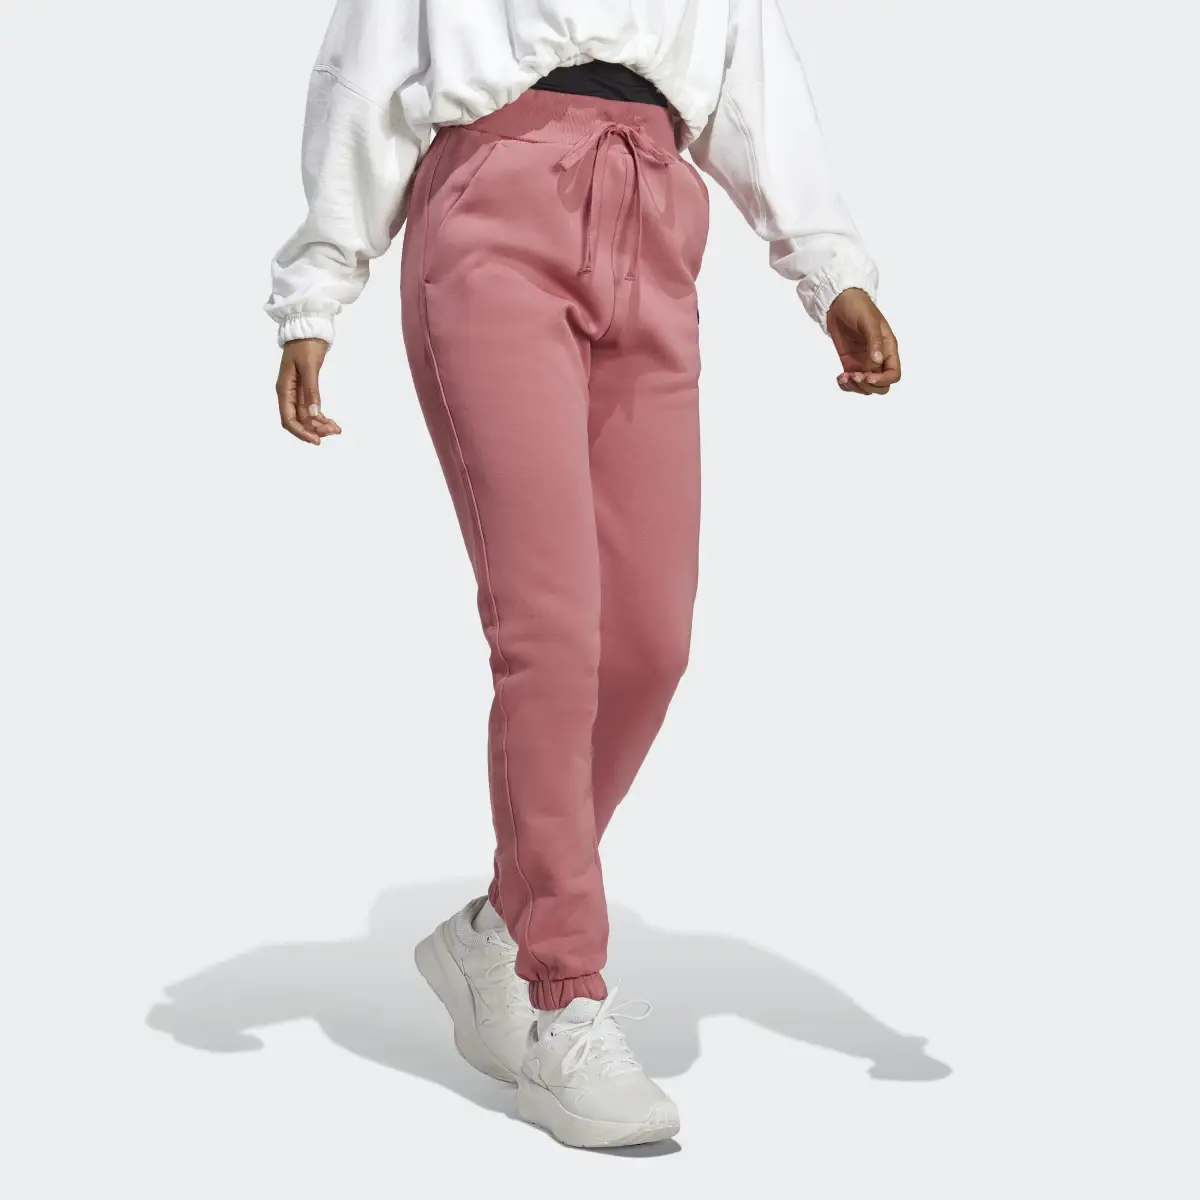 Adidas Lounge Fleece Pants. 3